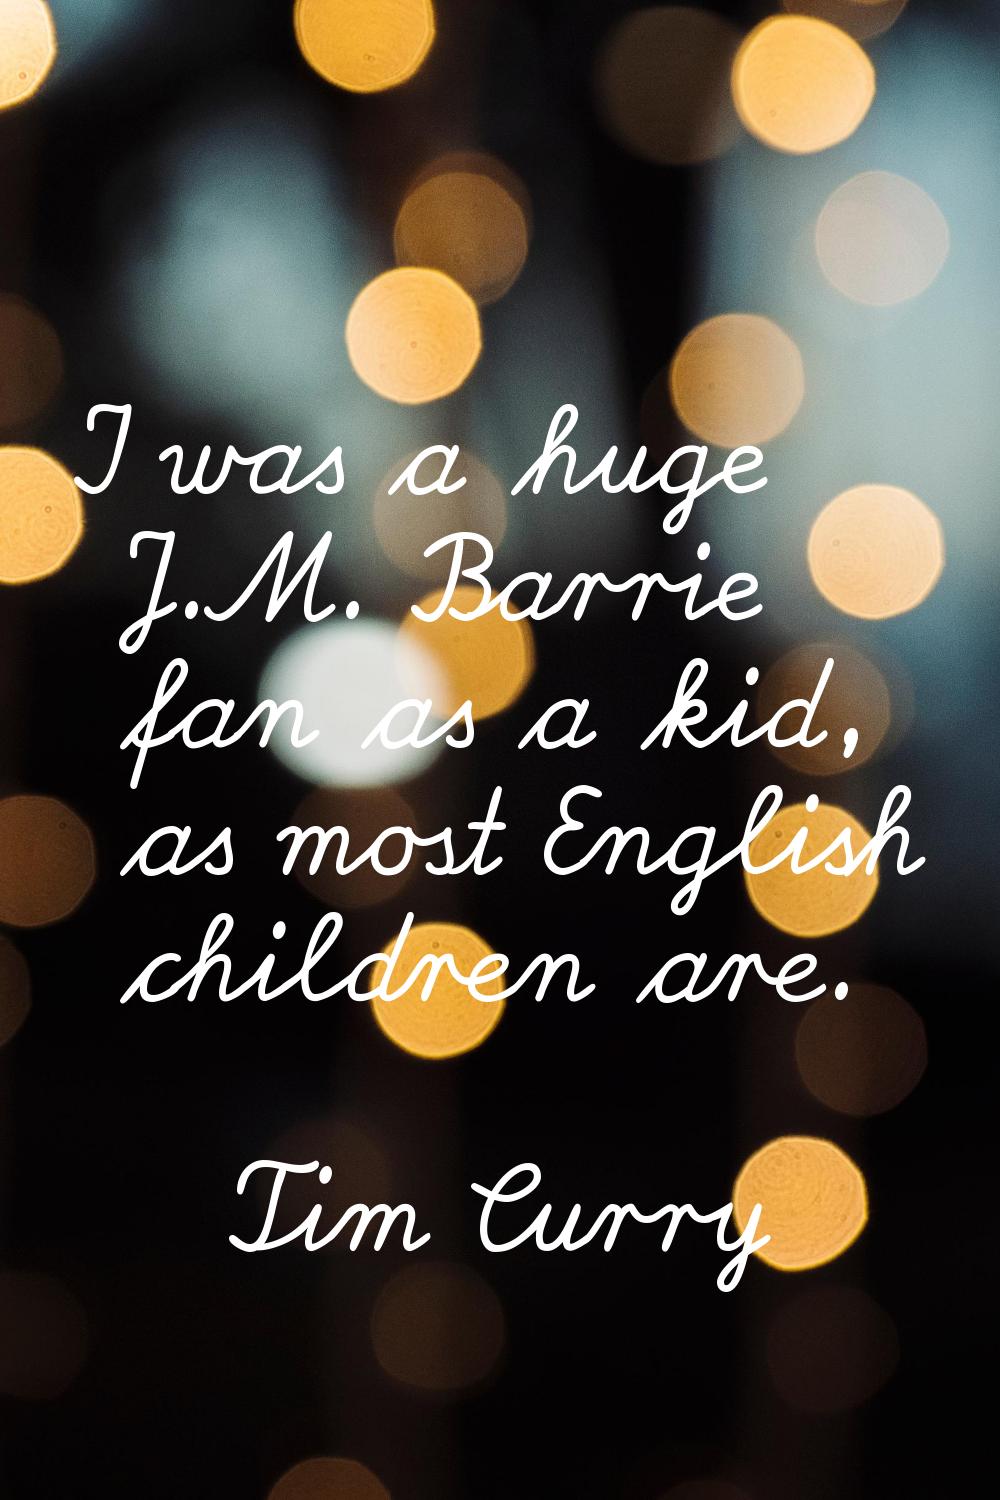 I was a huge J.M. Barrie fan as a kid, as most English children are.